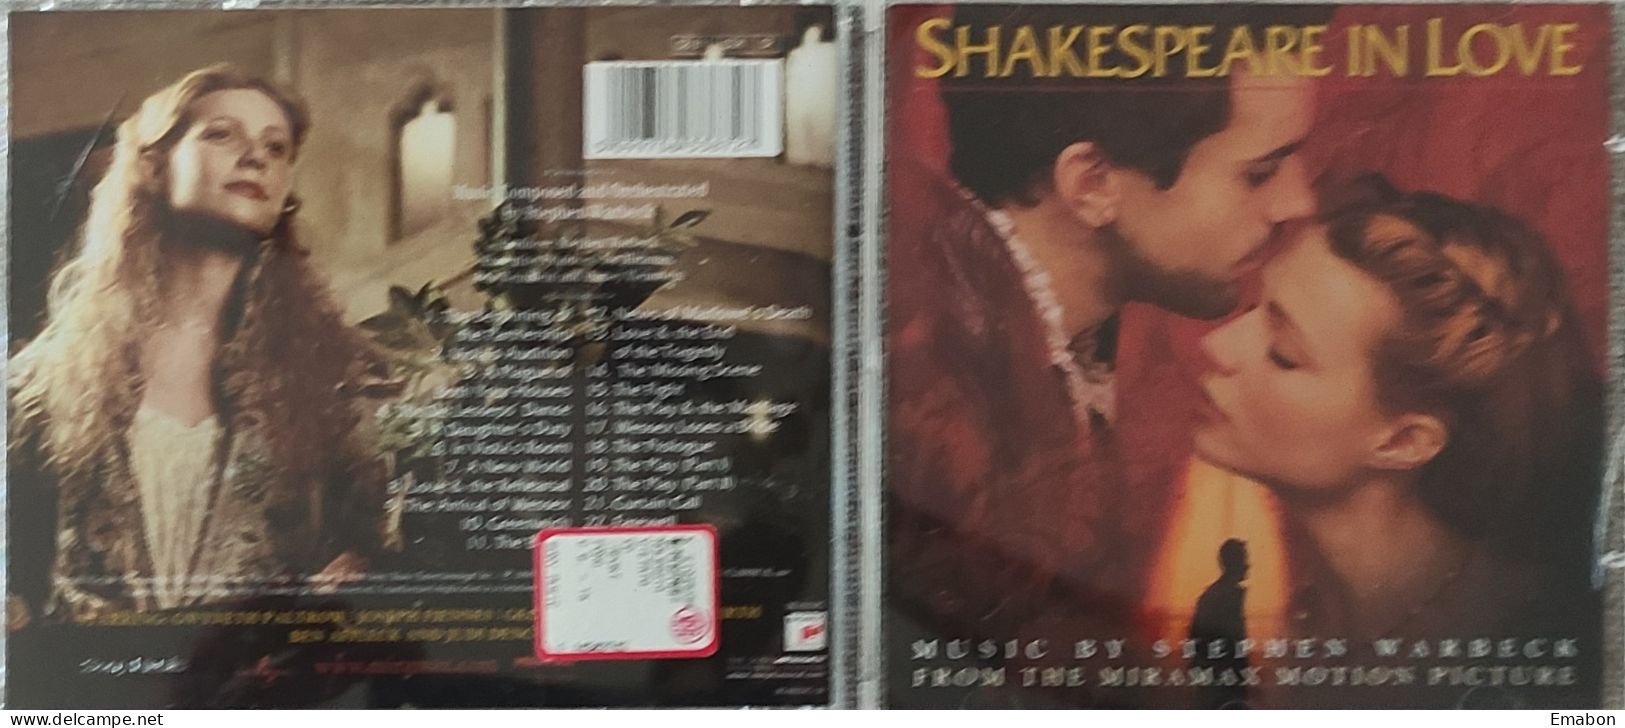 BORGATTA - FILM MUSIC  - Cd  STEPHEN WARBECK - SHAKESPEARE IN LOVE - SONY CLASSICAL 1998 - USATO In Buono Stato - Soundtracks, Film Music